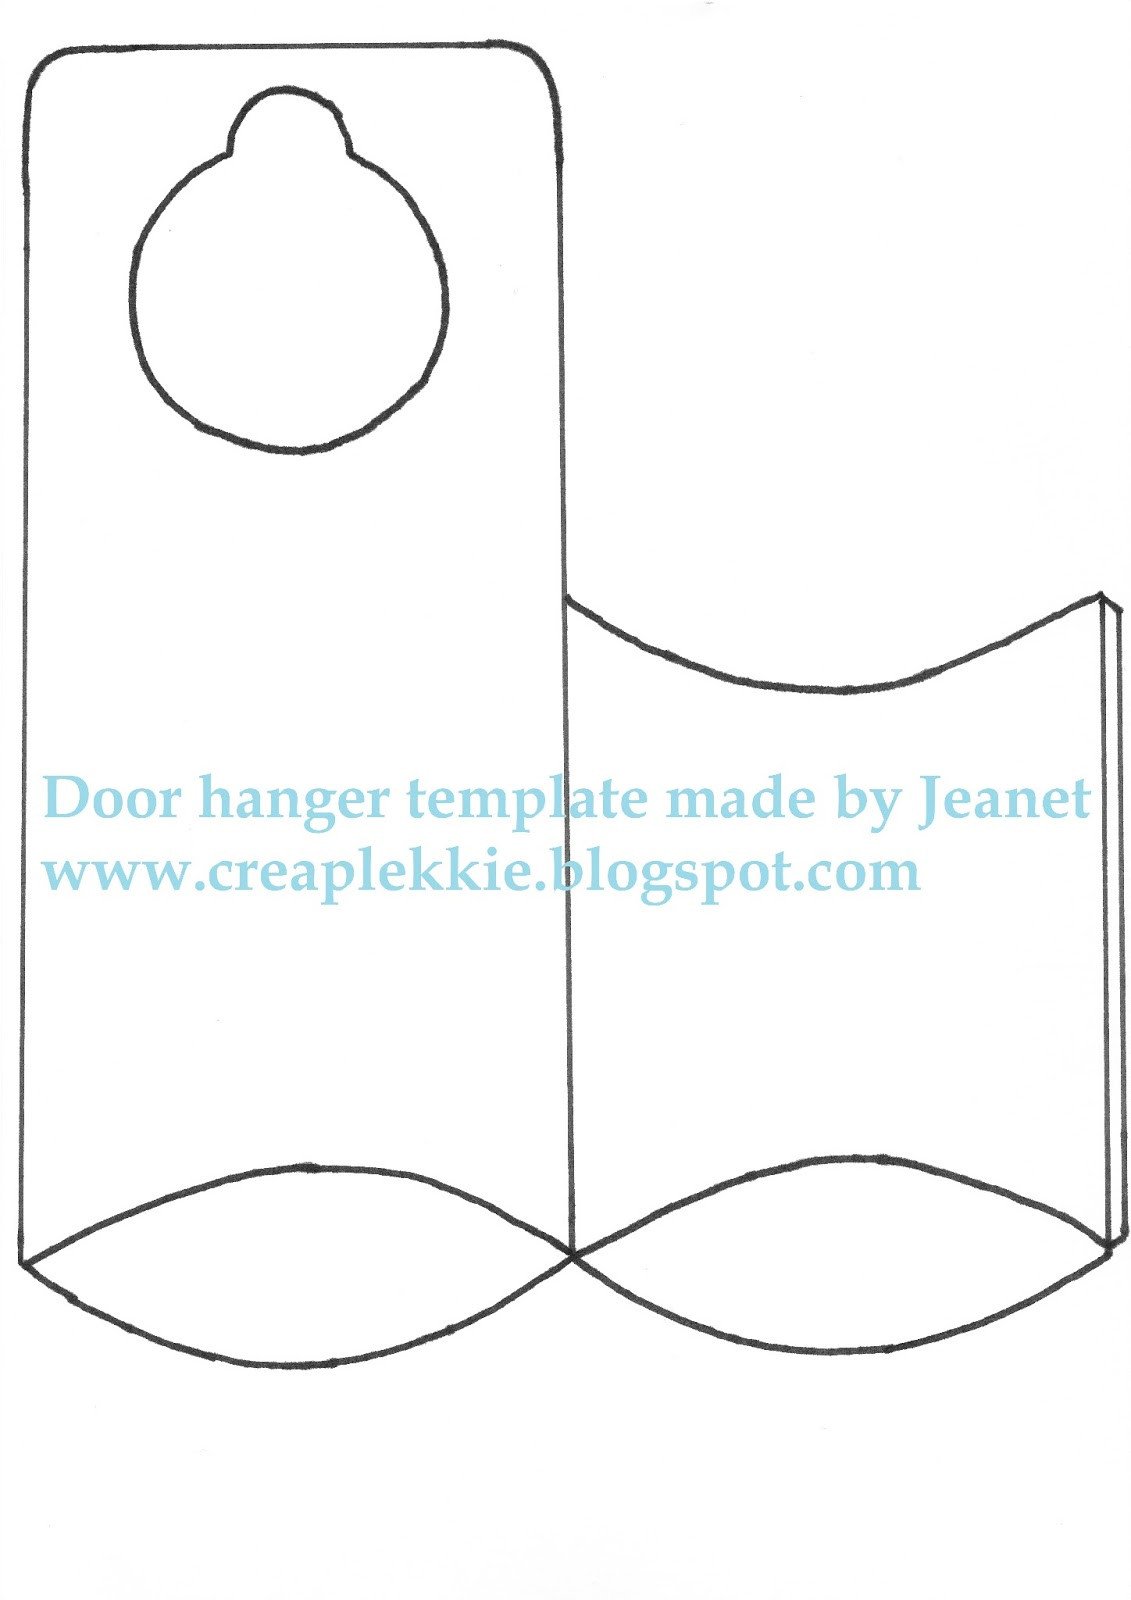 Whiff of Joy Tutorials & Inspiration Door hanger template